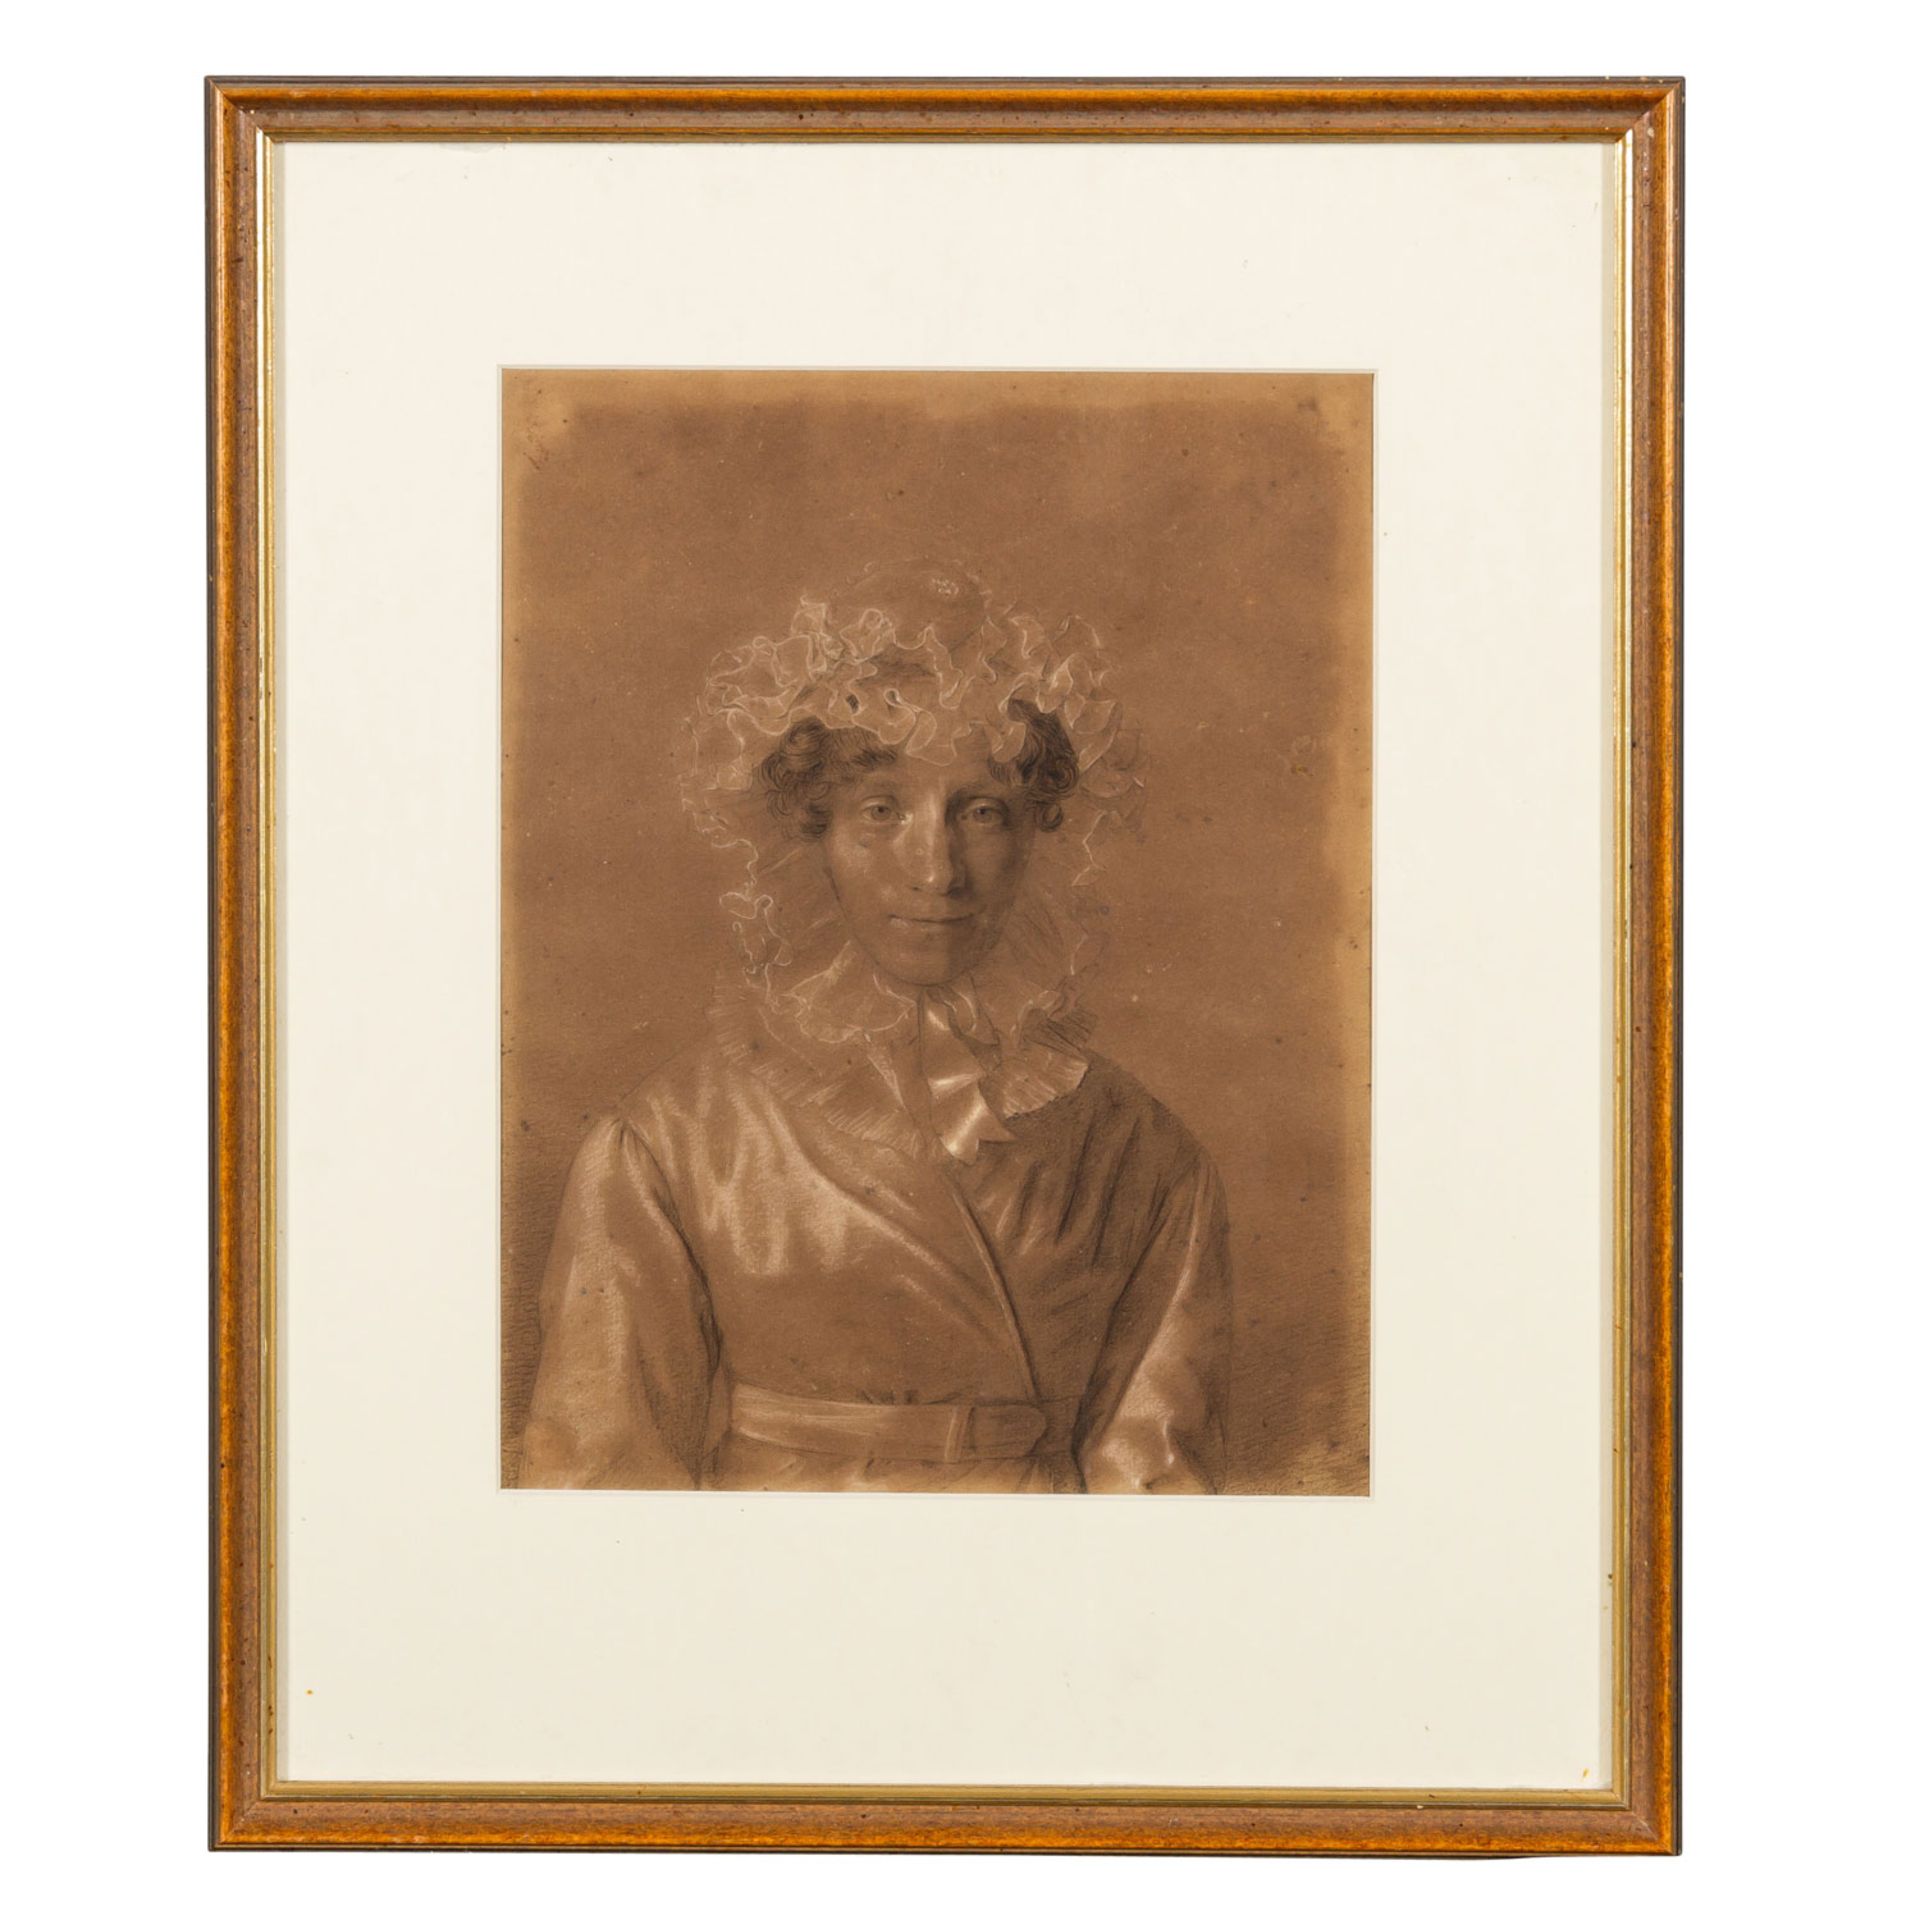 ZUGESCHRIEBEN ENDER, THOMAS (1793-1875), Brustbildnis einer Frau, - Image 2 of 5